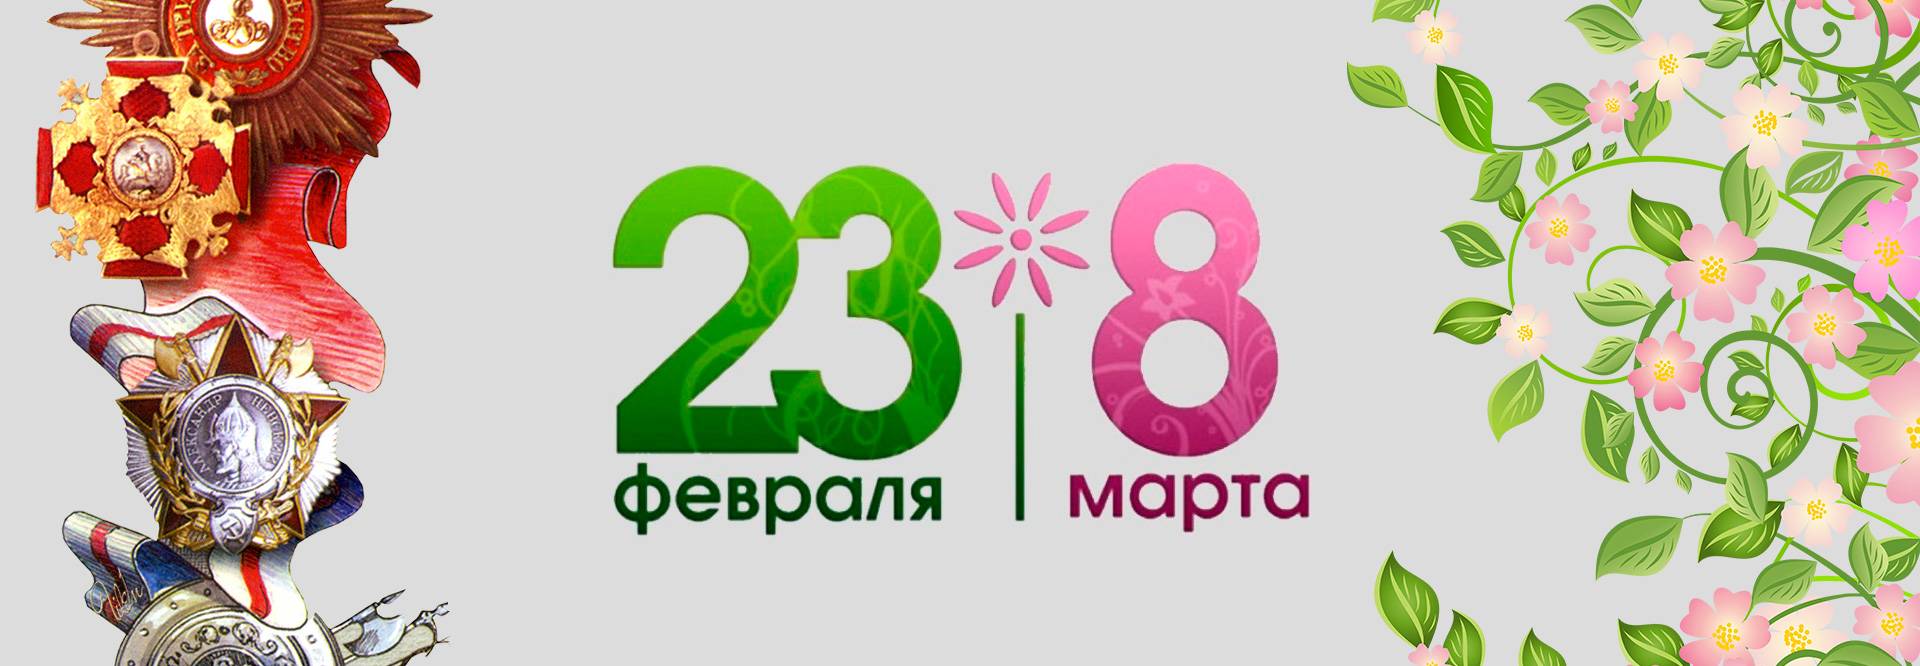 Поздравления с днем рождения маме двойняшек | pzdb.ru - поздравления на все случаи жизни